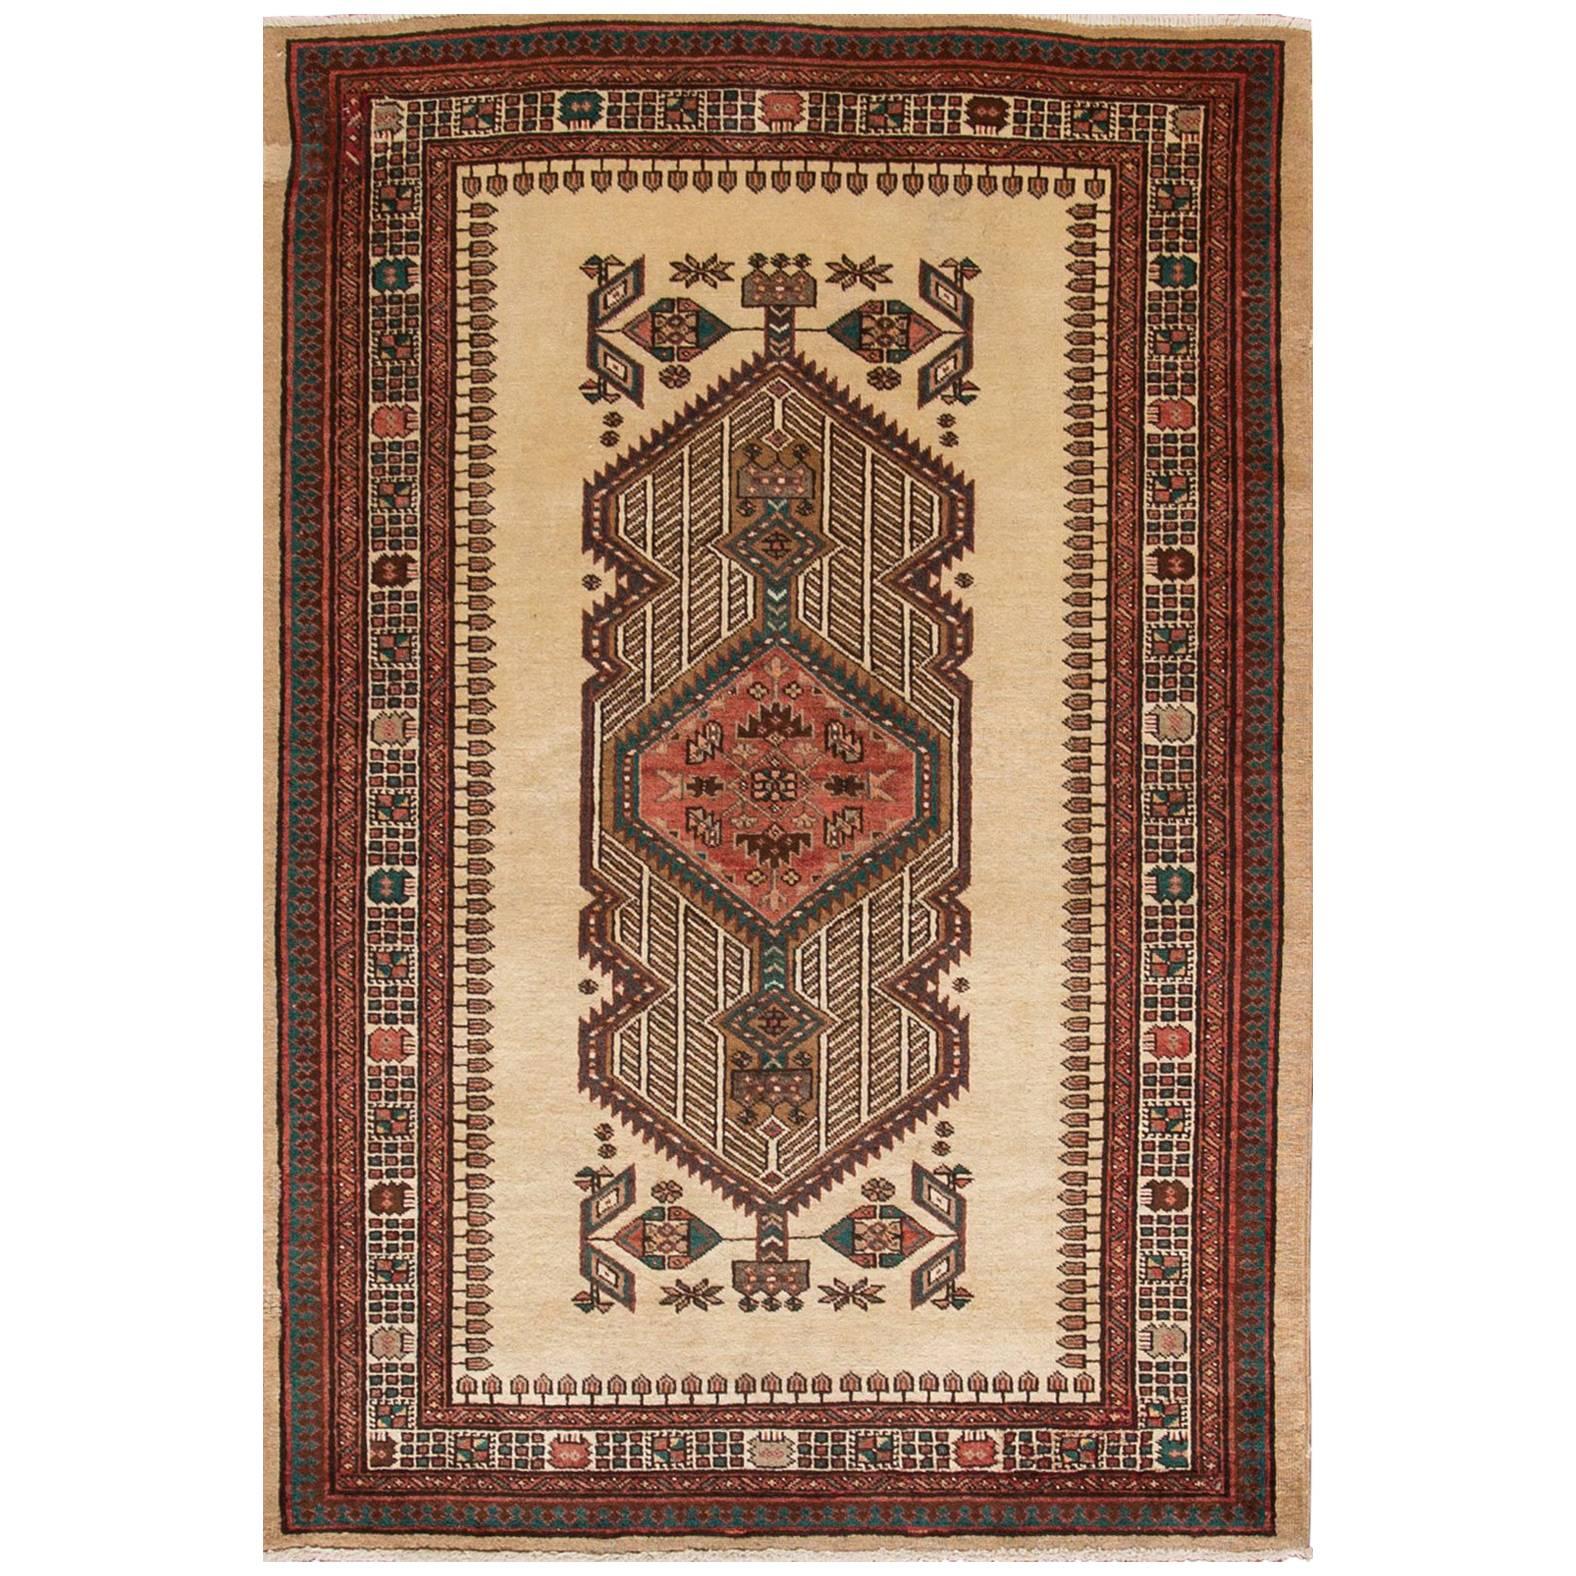 Tan, Rostfarbener persischer Bakhtiari-Teppich aus den 1940er Jahren